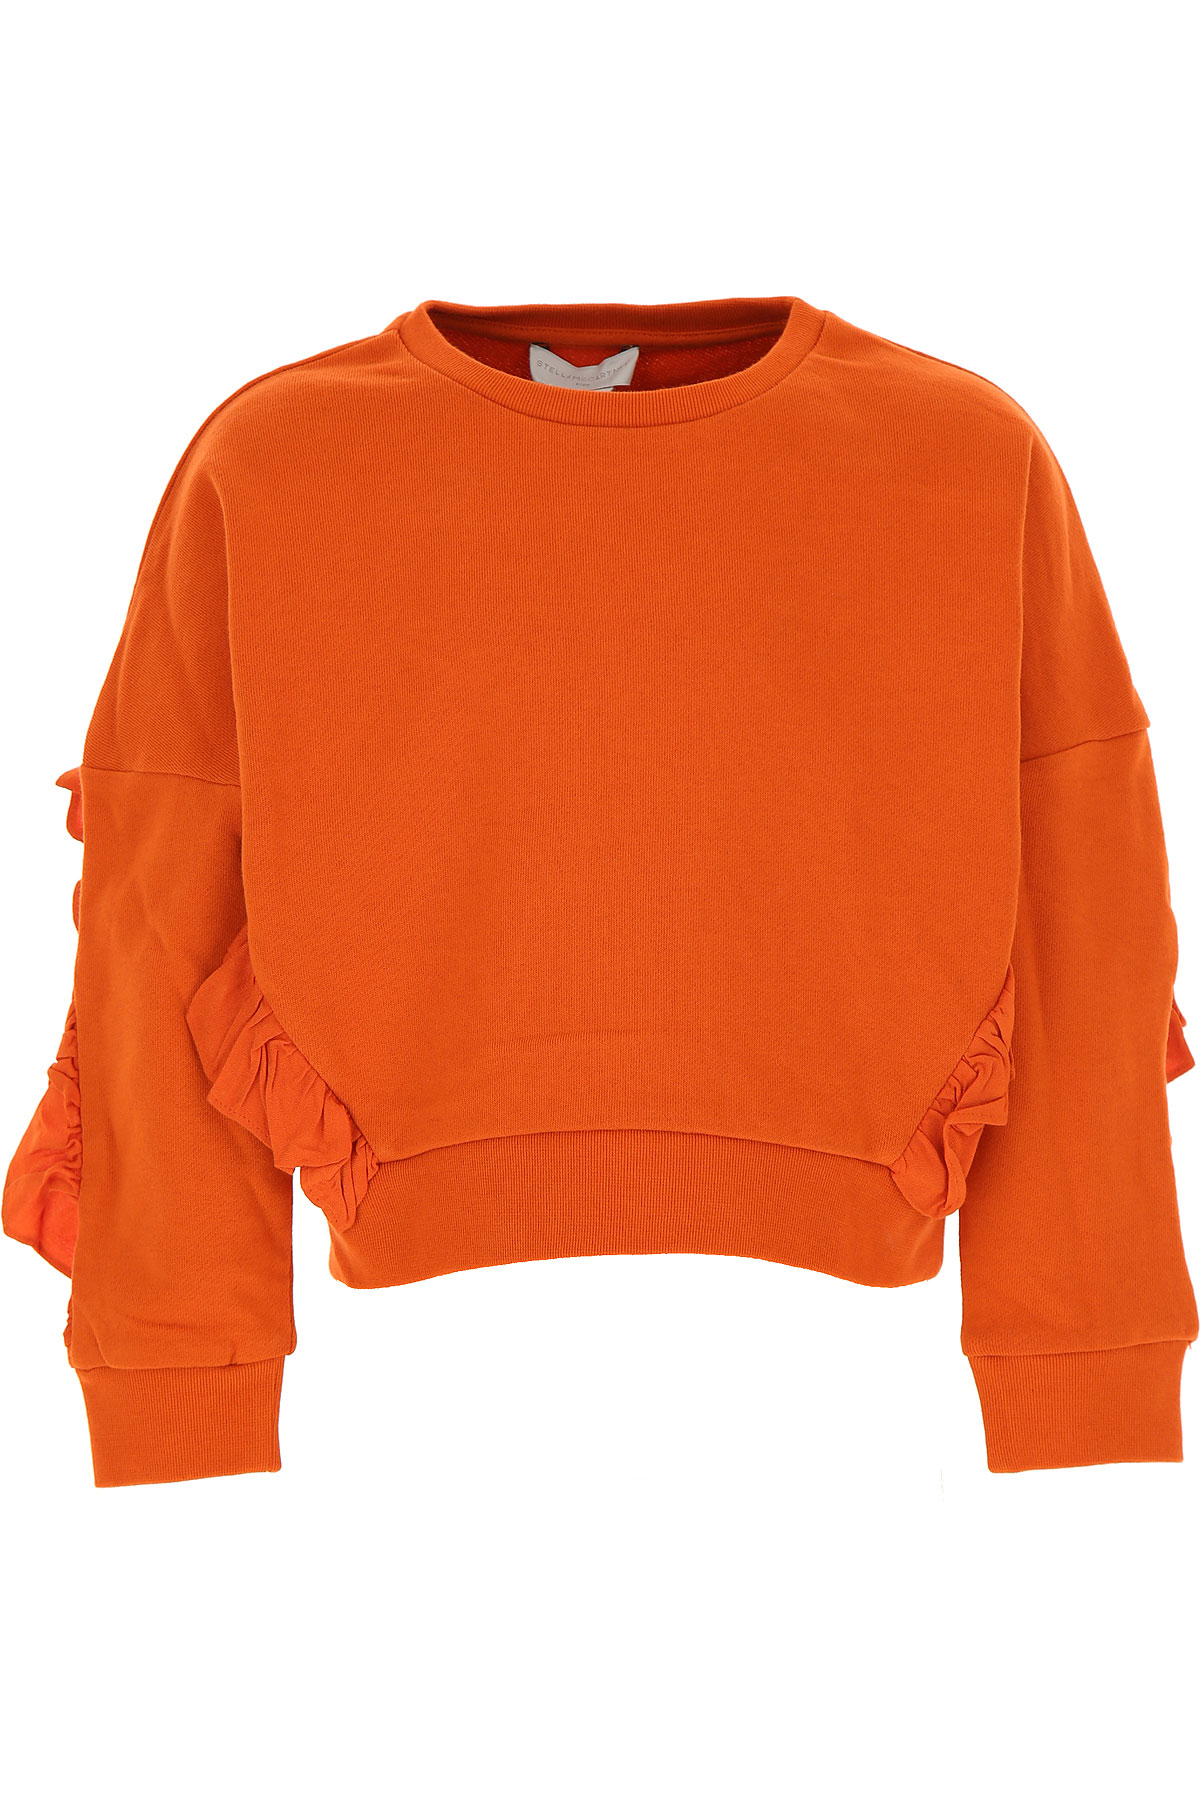 Stella McCartney Kinder Sweatshirt & Kapuzenpullover für Mädchen Günstig im Sale, Orange, Baumwolle, 2017, 10Y 12Y 4Y 5Y 6Y 8Y